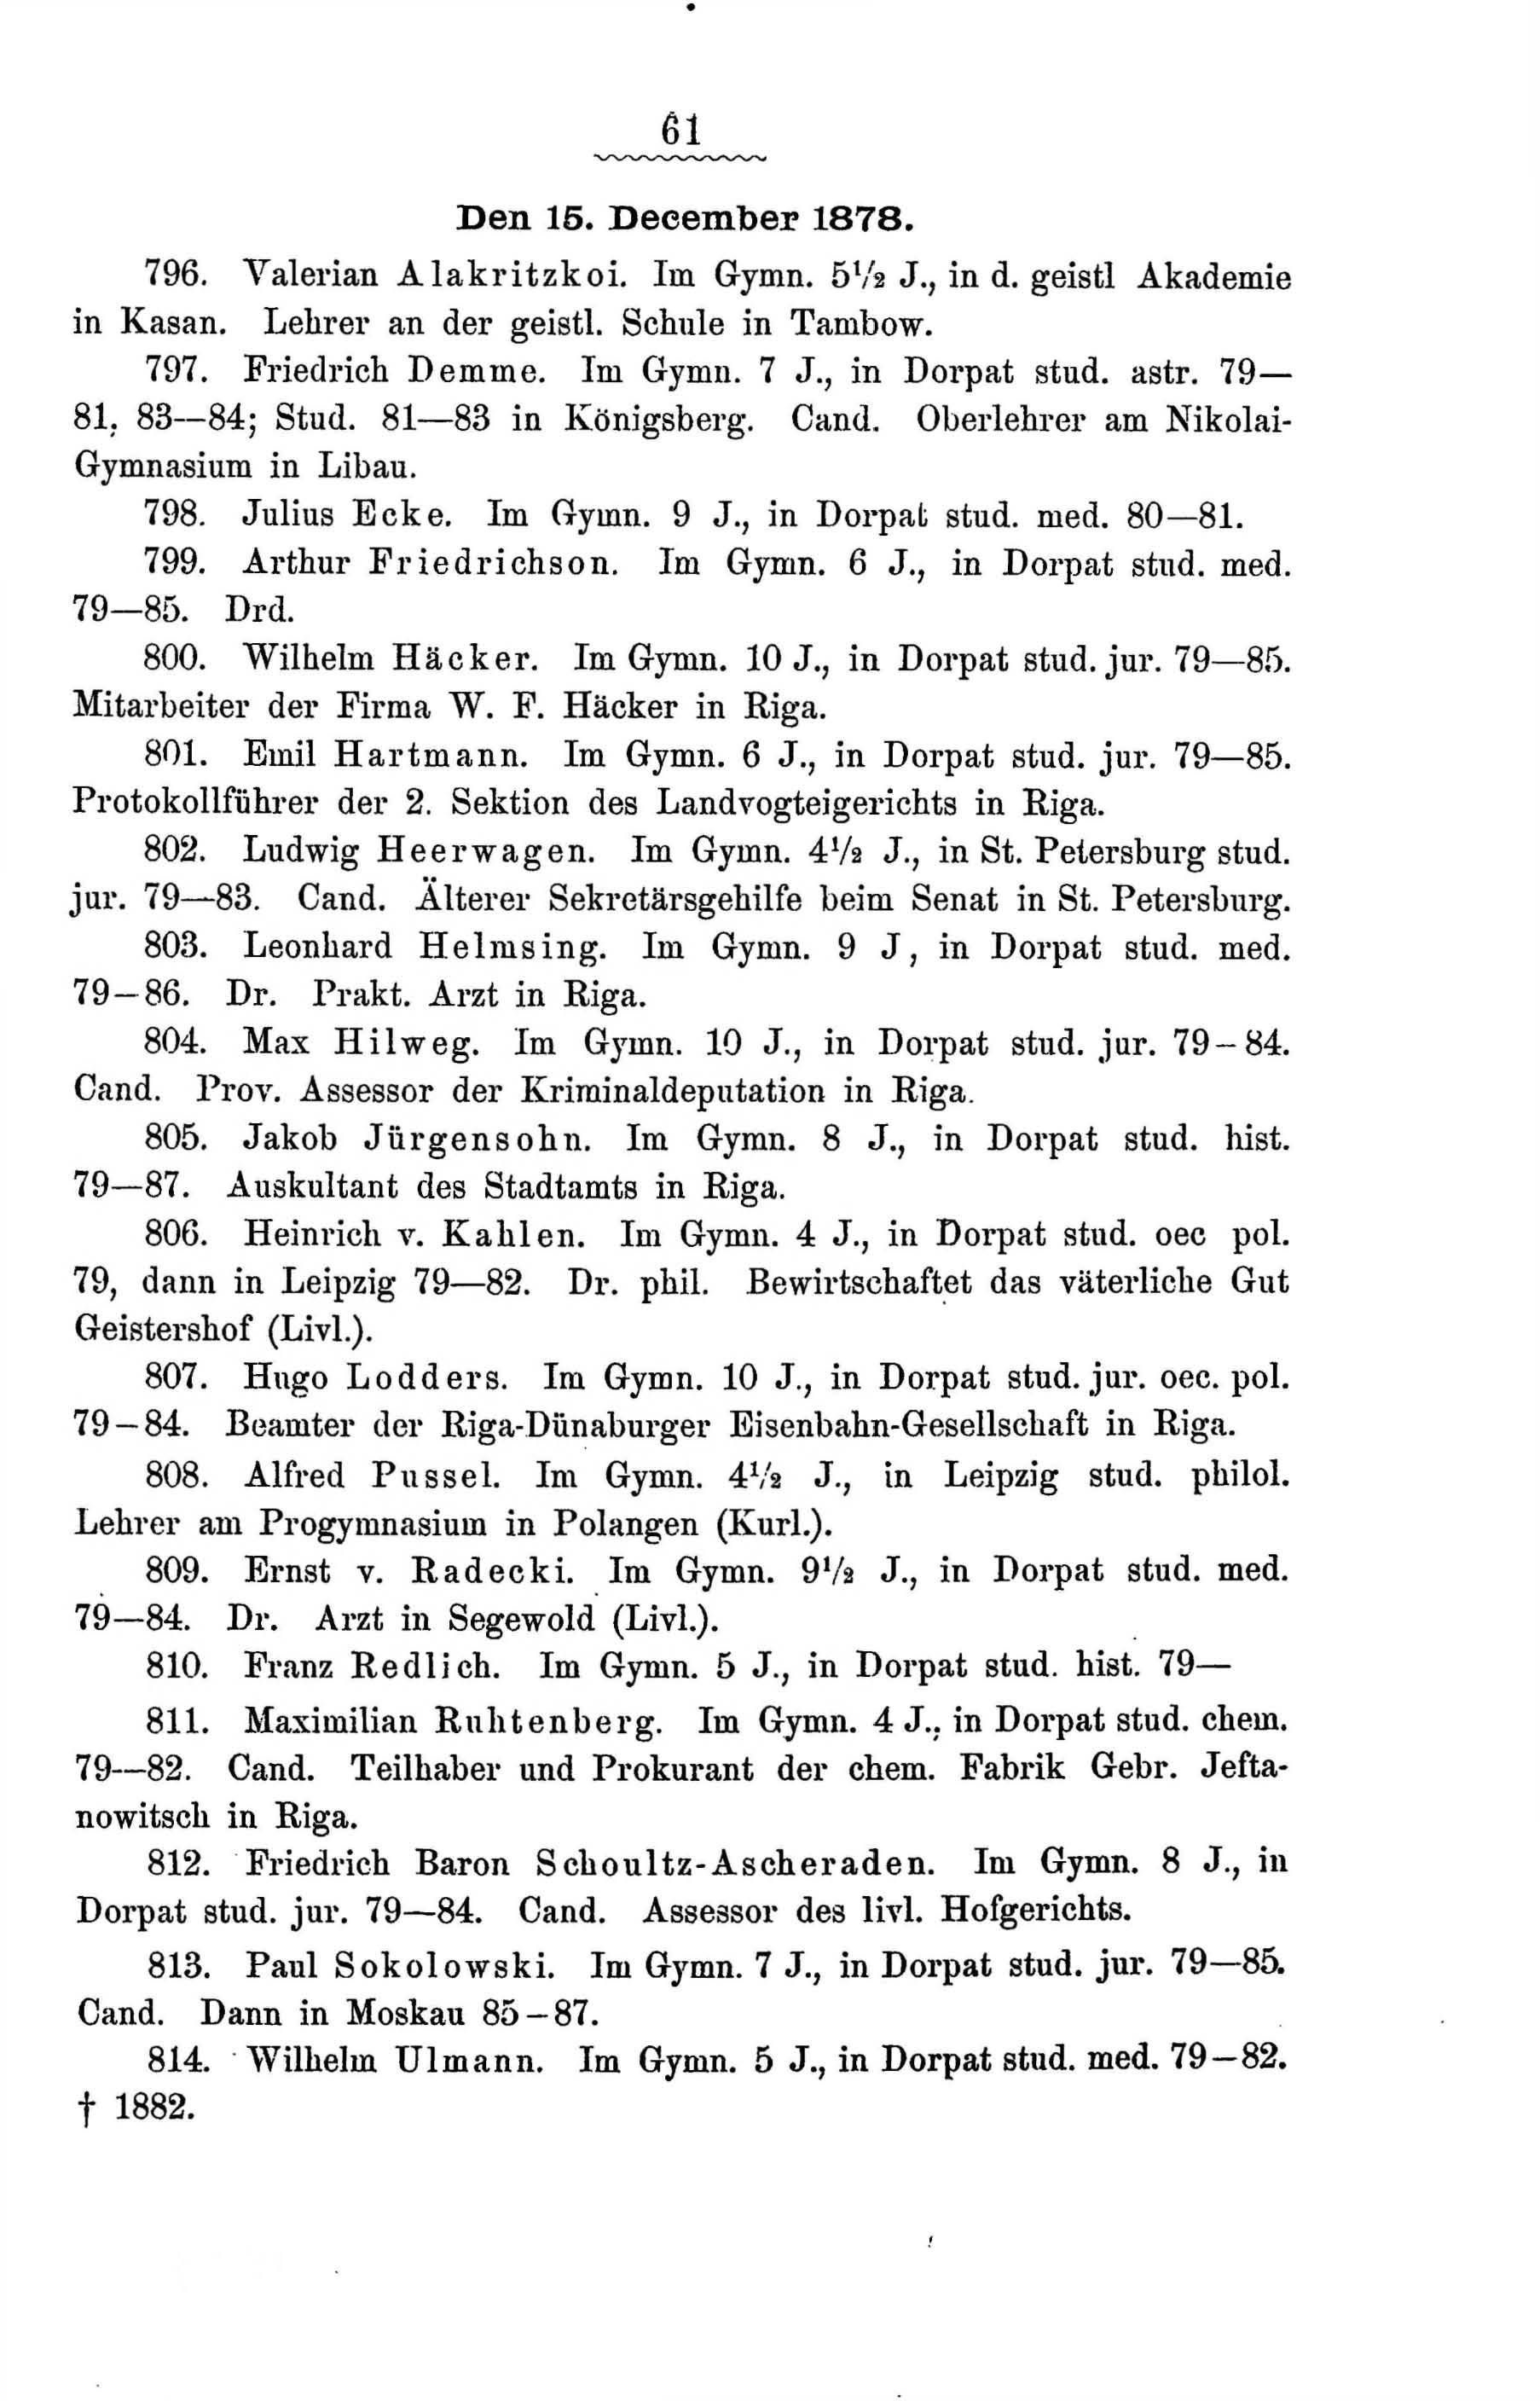 Zur Geschichte des Gouvernements-Gymnasiums in Riga (1888) | 114. Haupttext